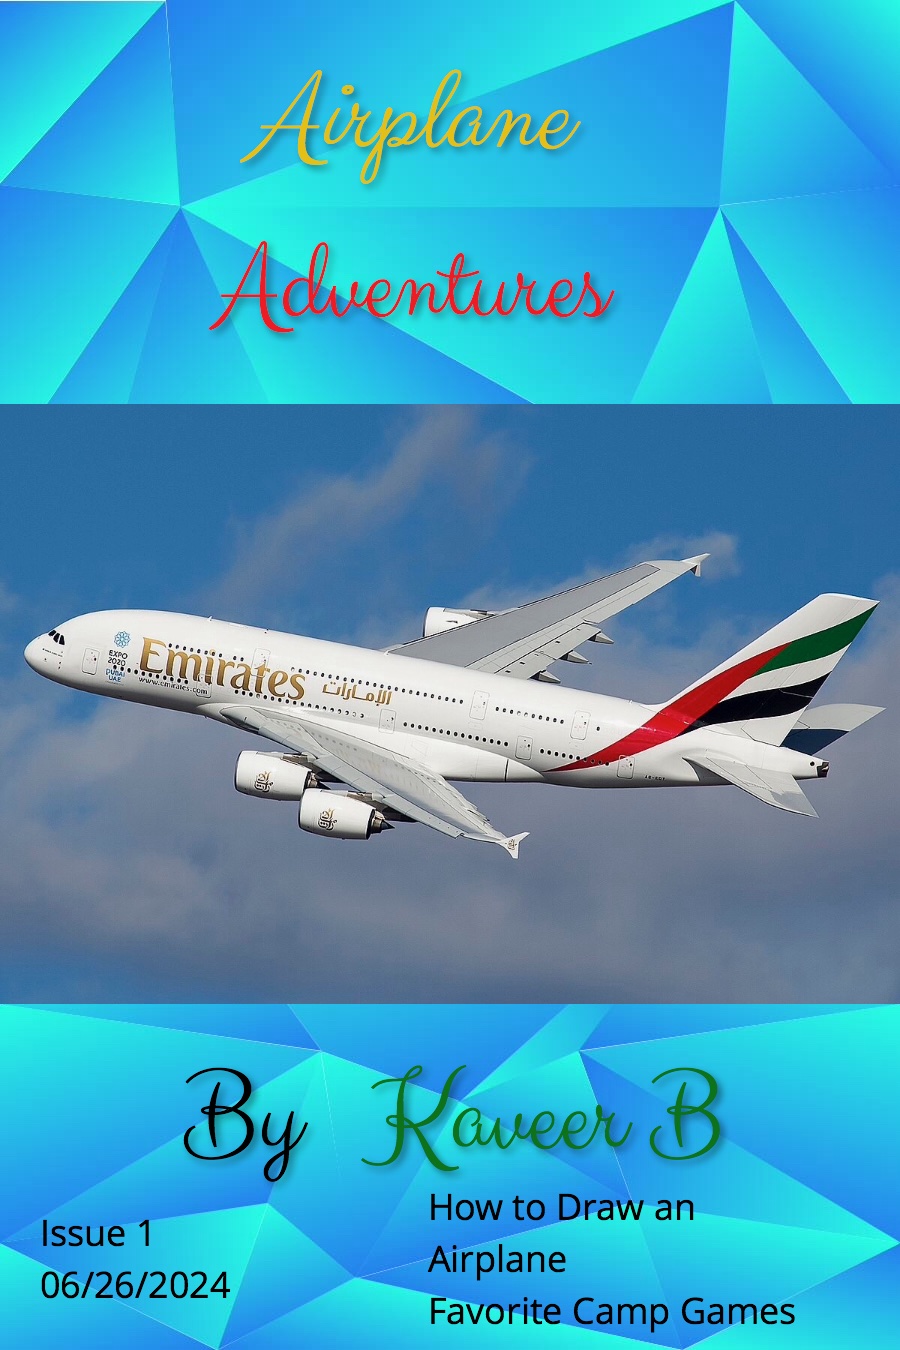 Airplane Adventures by Kaveer B